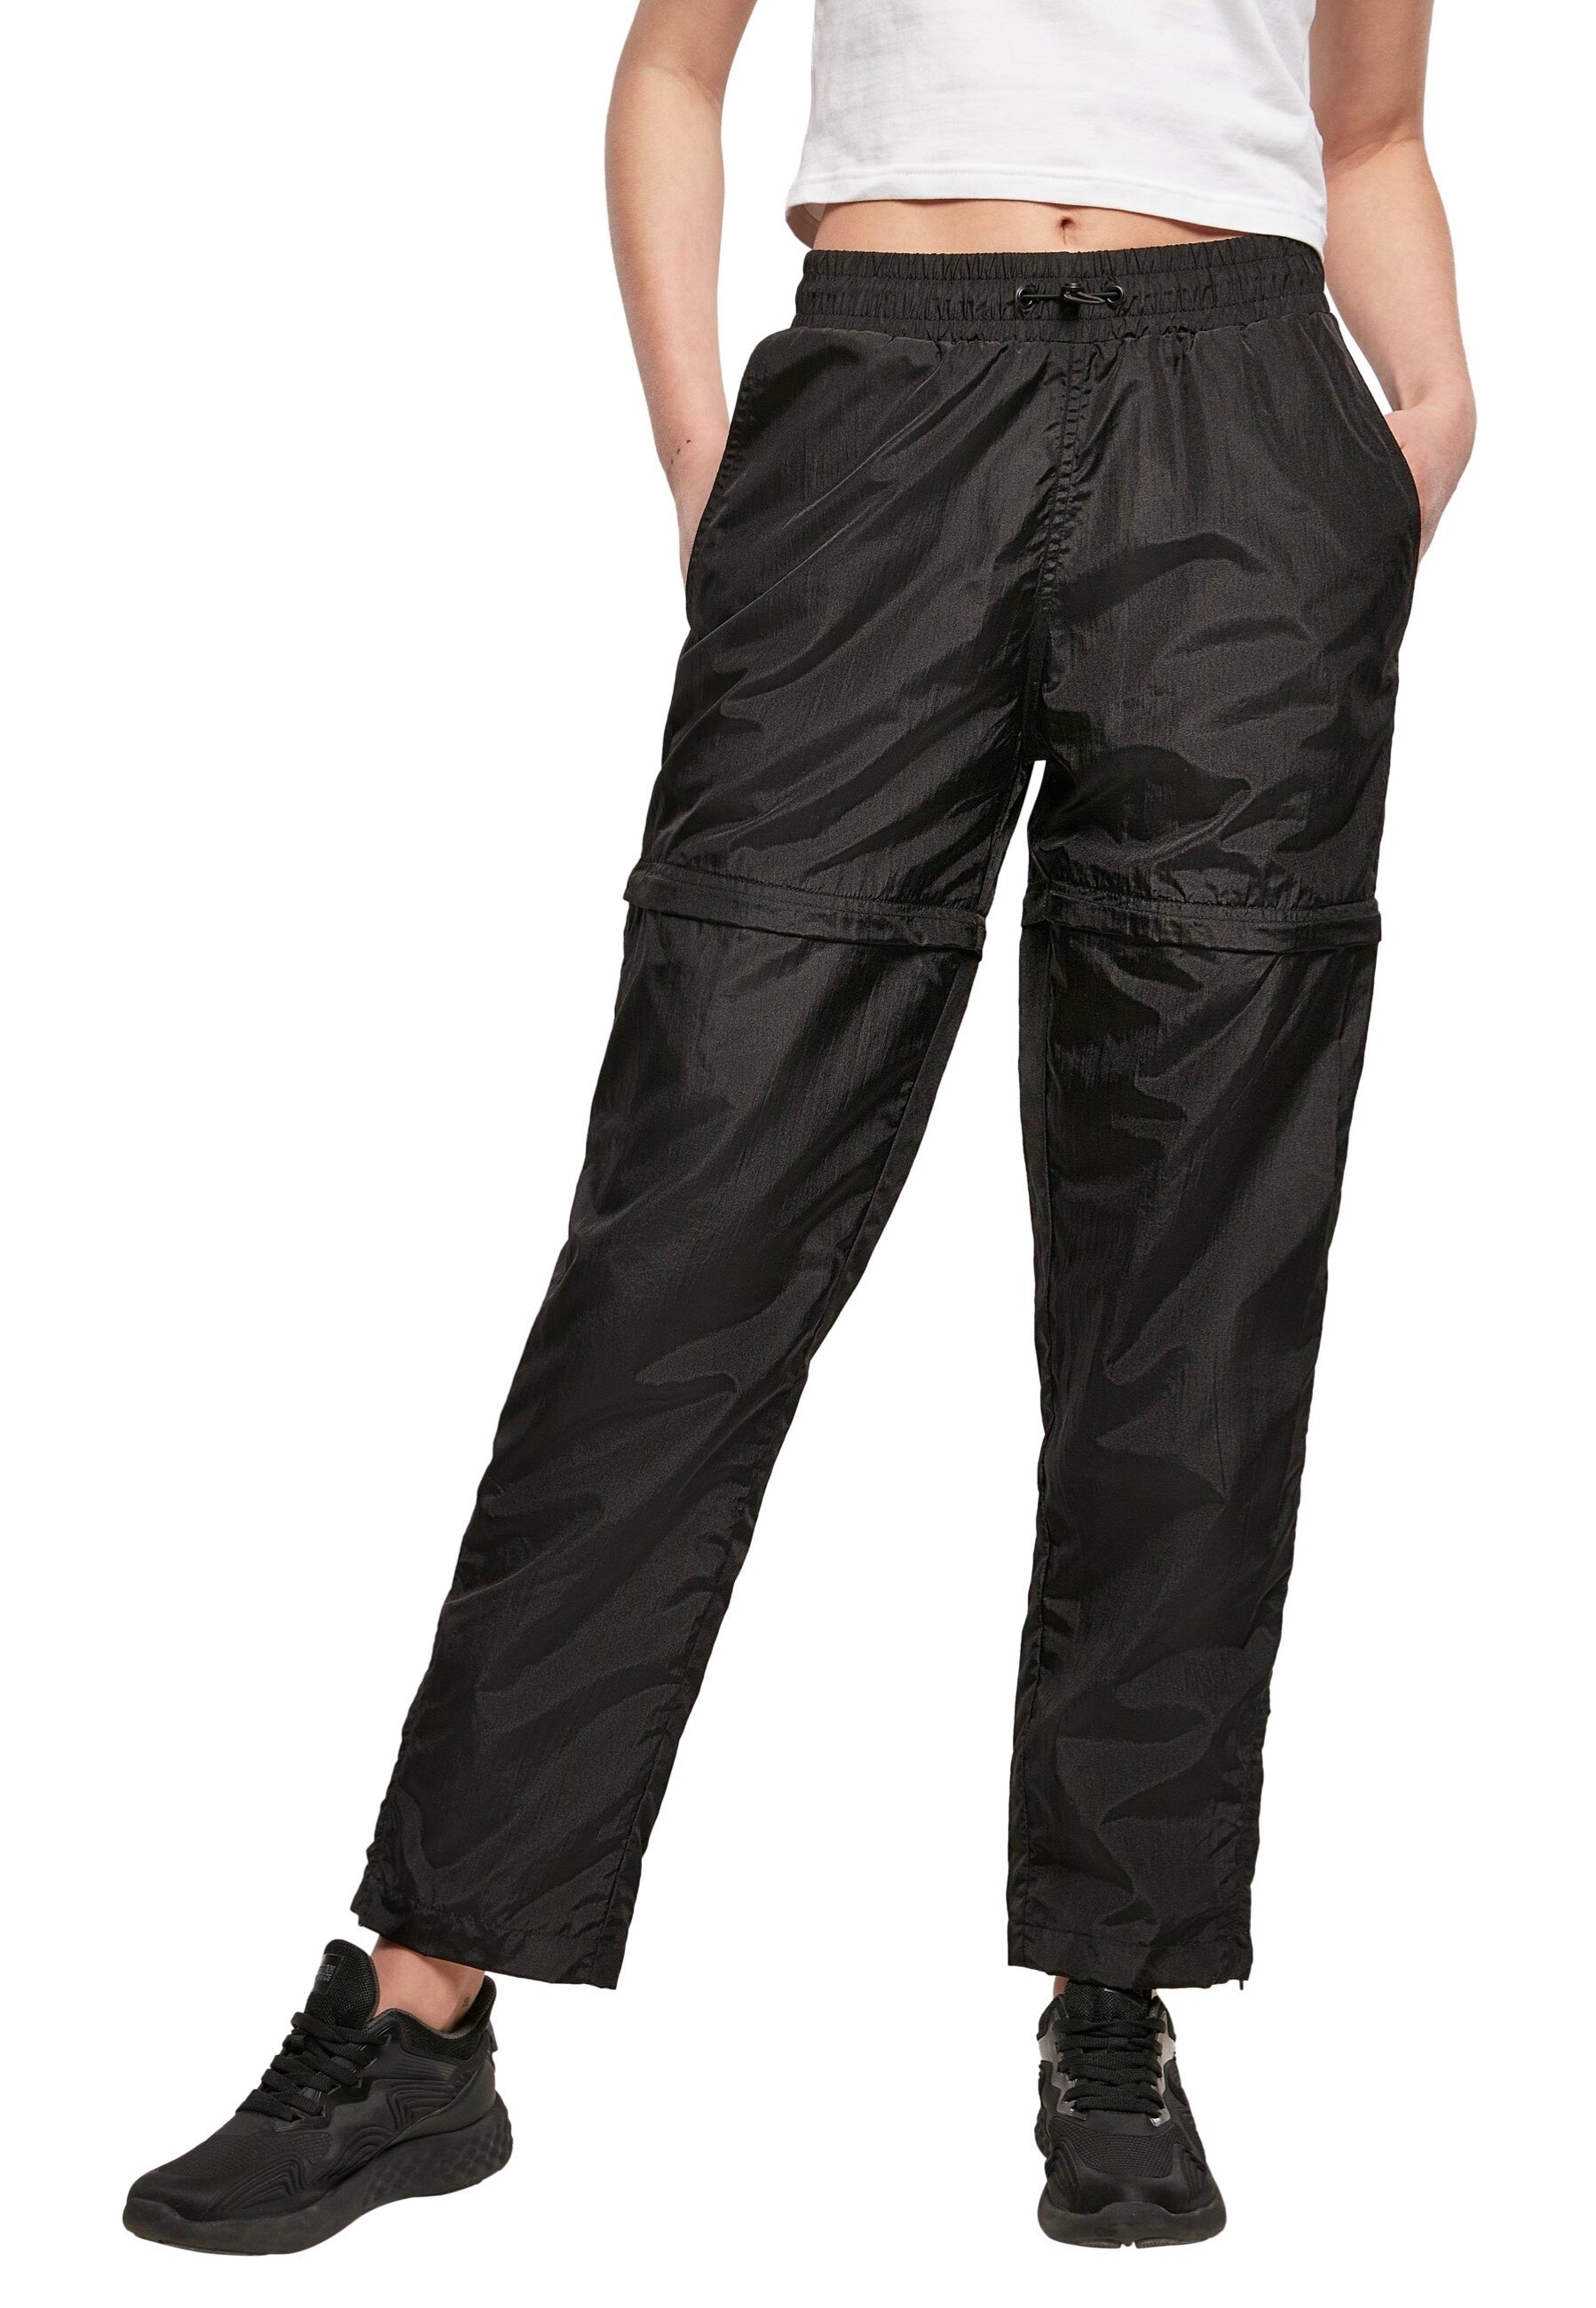 Urban Classics - Ladies Shiny Crinkle Nylon Zip Black - Pants